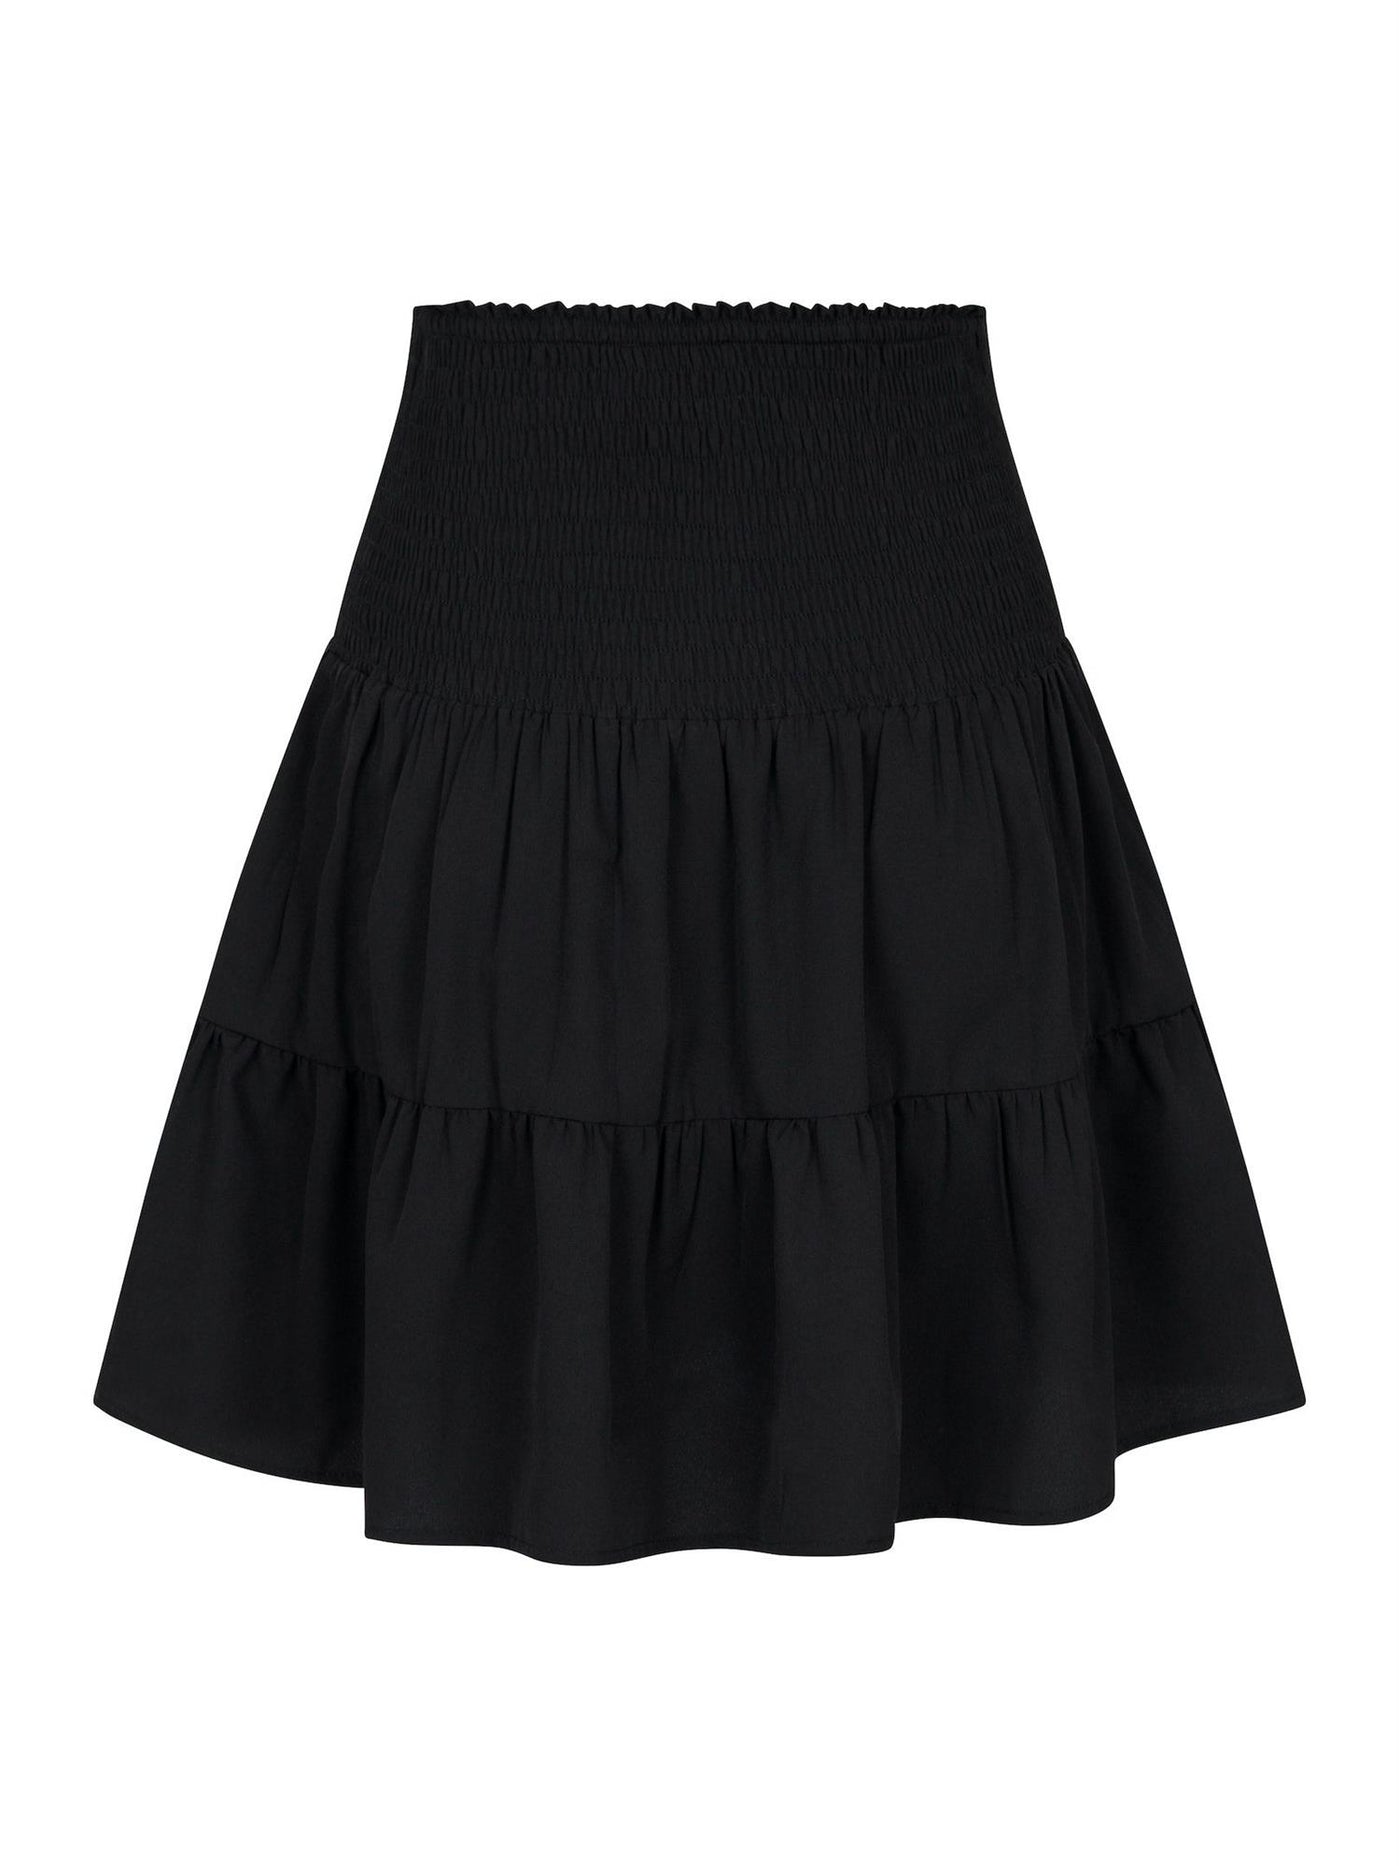 Cordova R Skirt Black